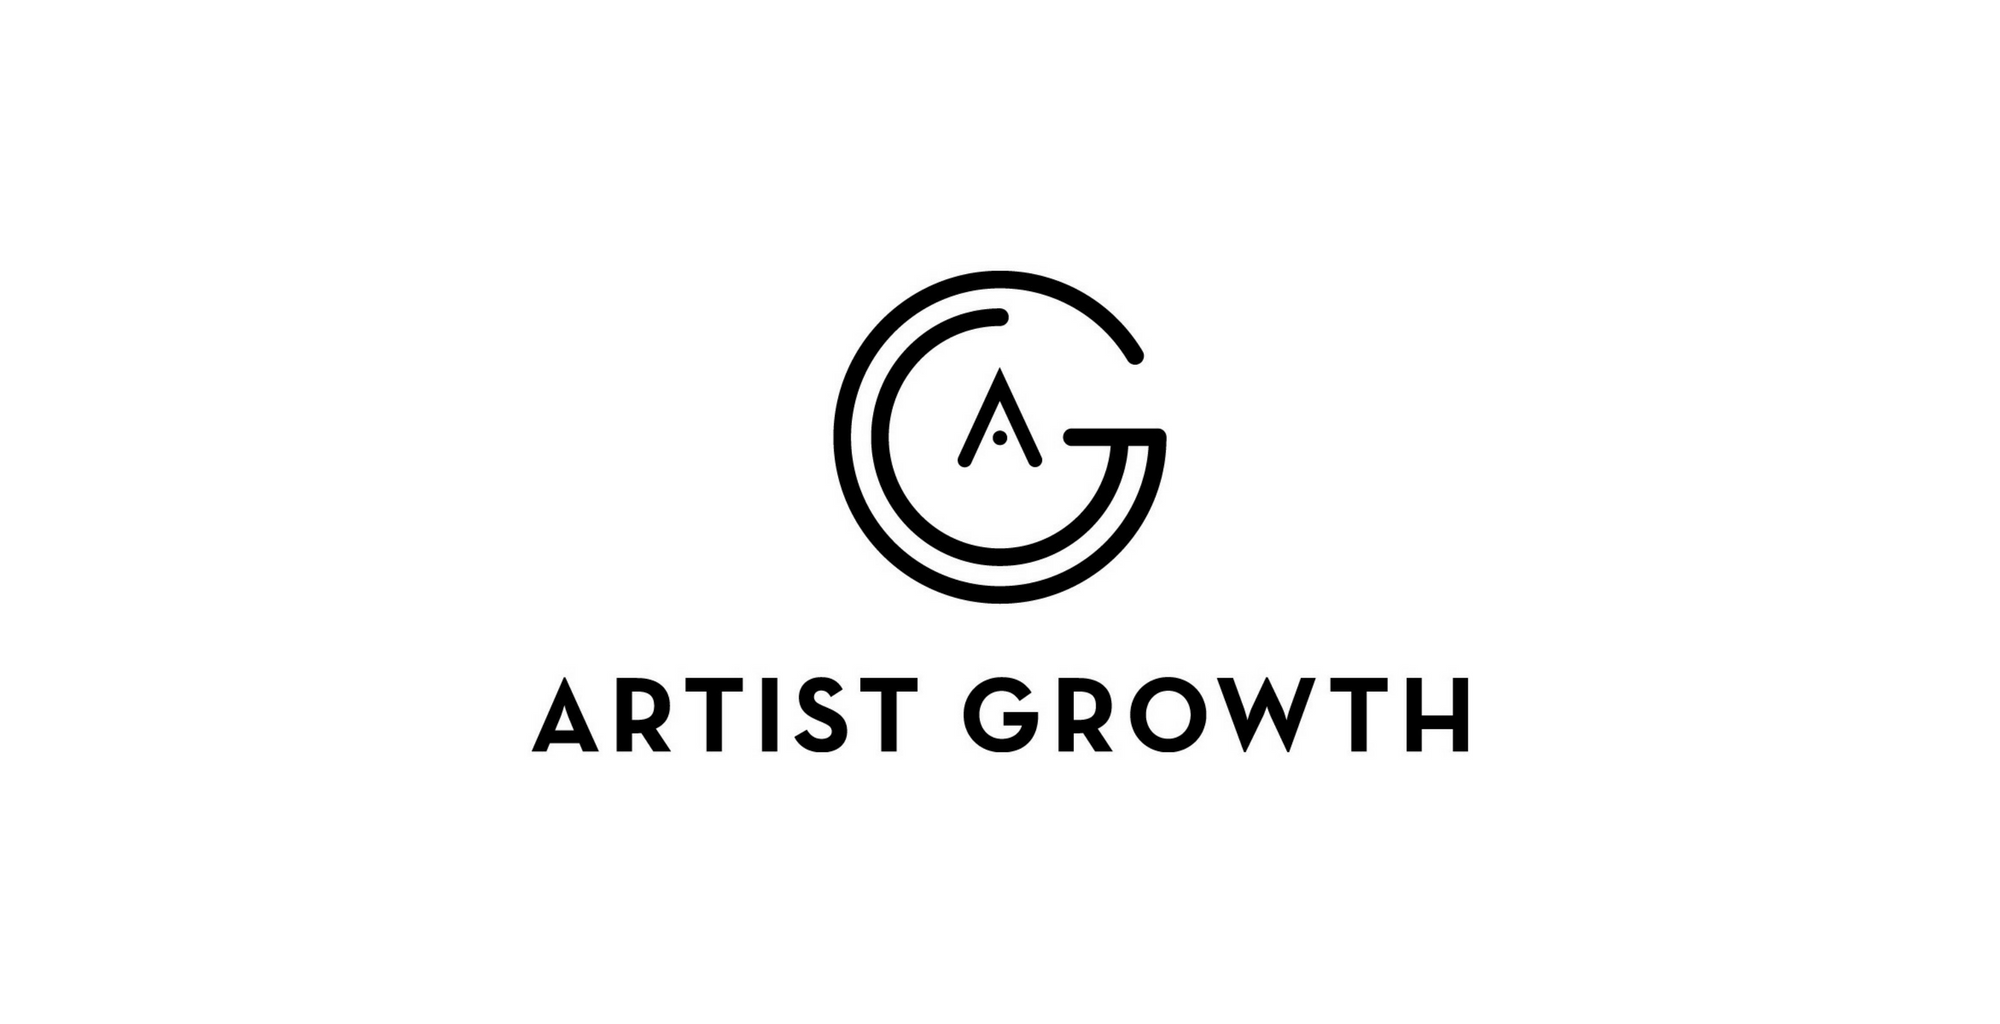 Artist Growth Gets Funding - CelebrityAccess